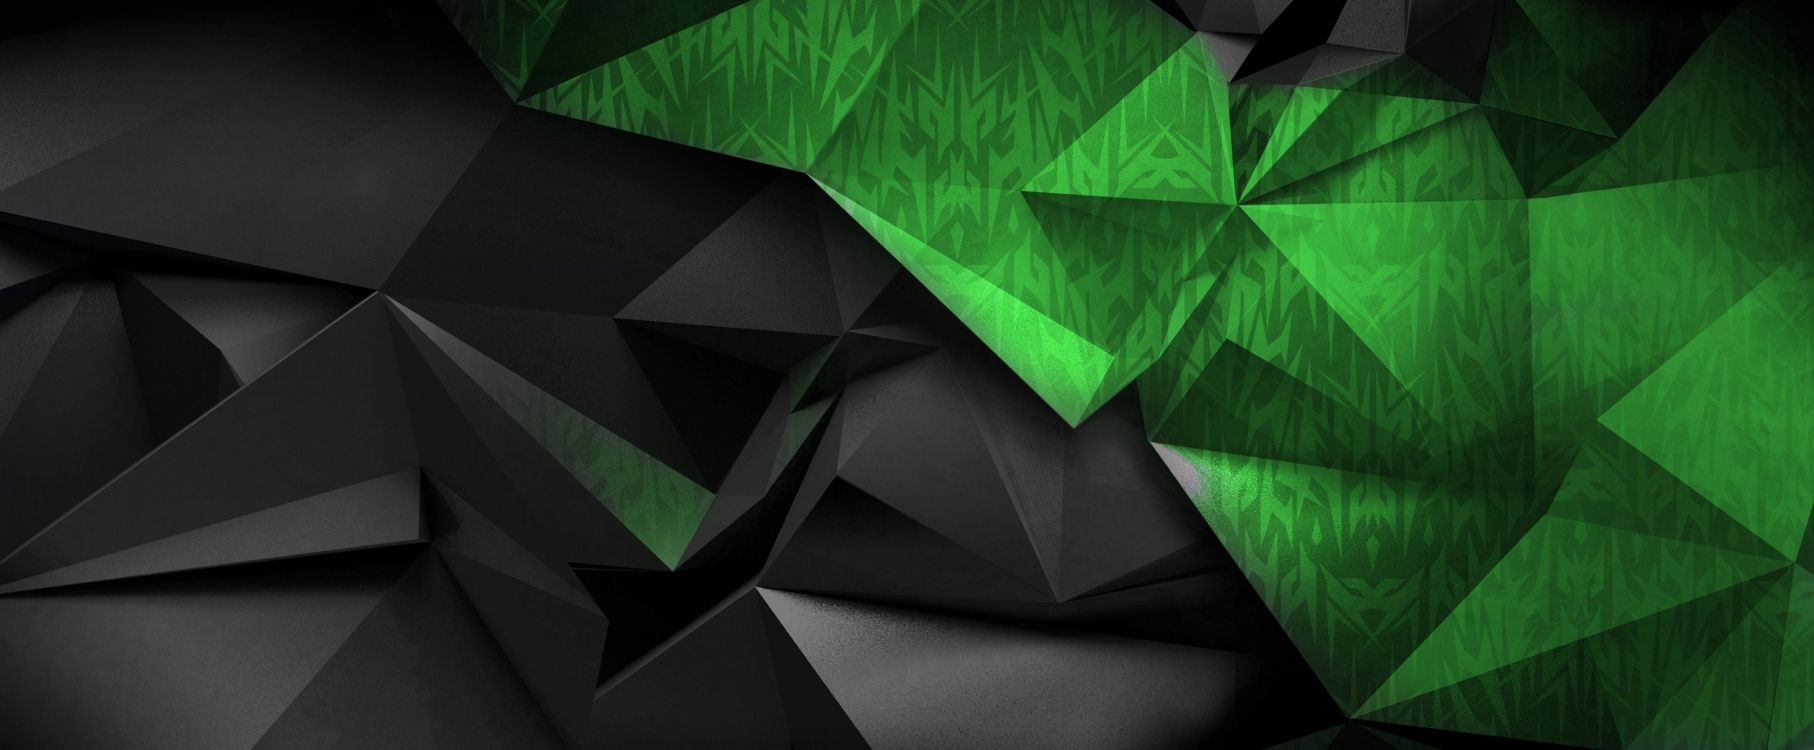 宏碁, 绿色的, 宏碁渴望, 三角形, 戴尔 壁纸 5064x2093 允许